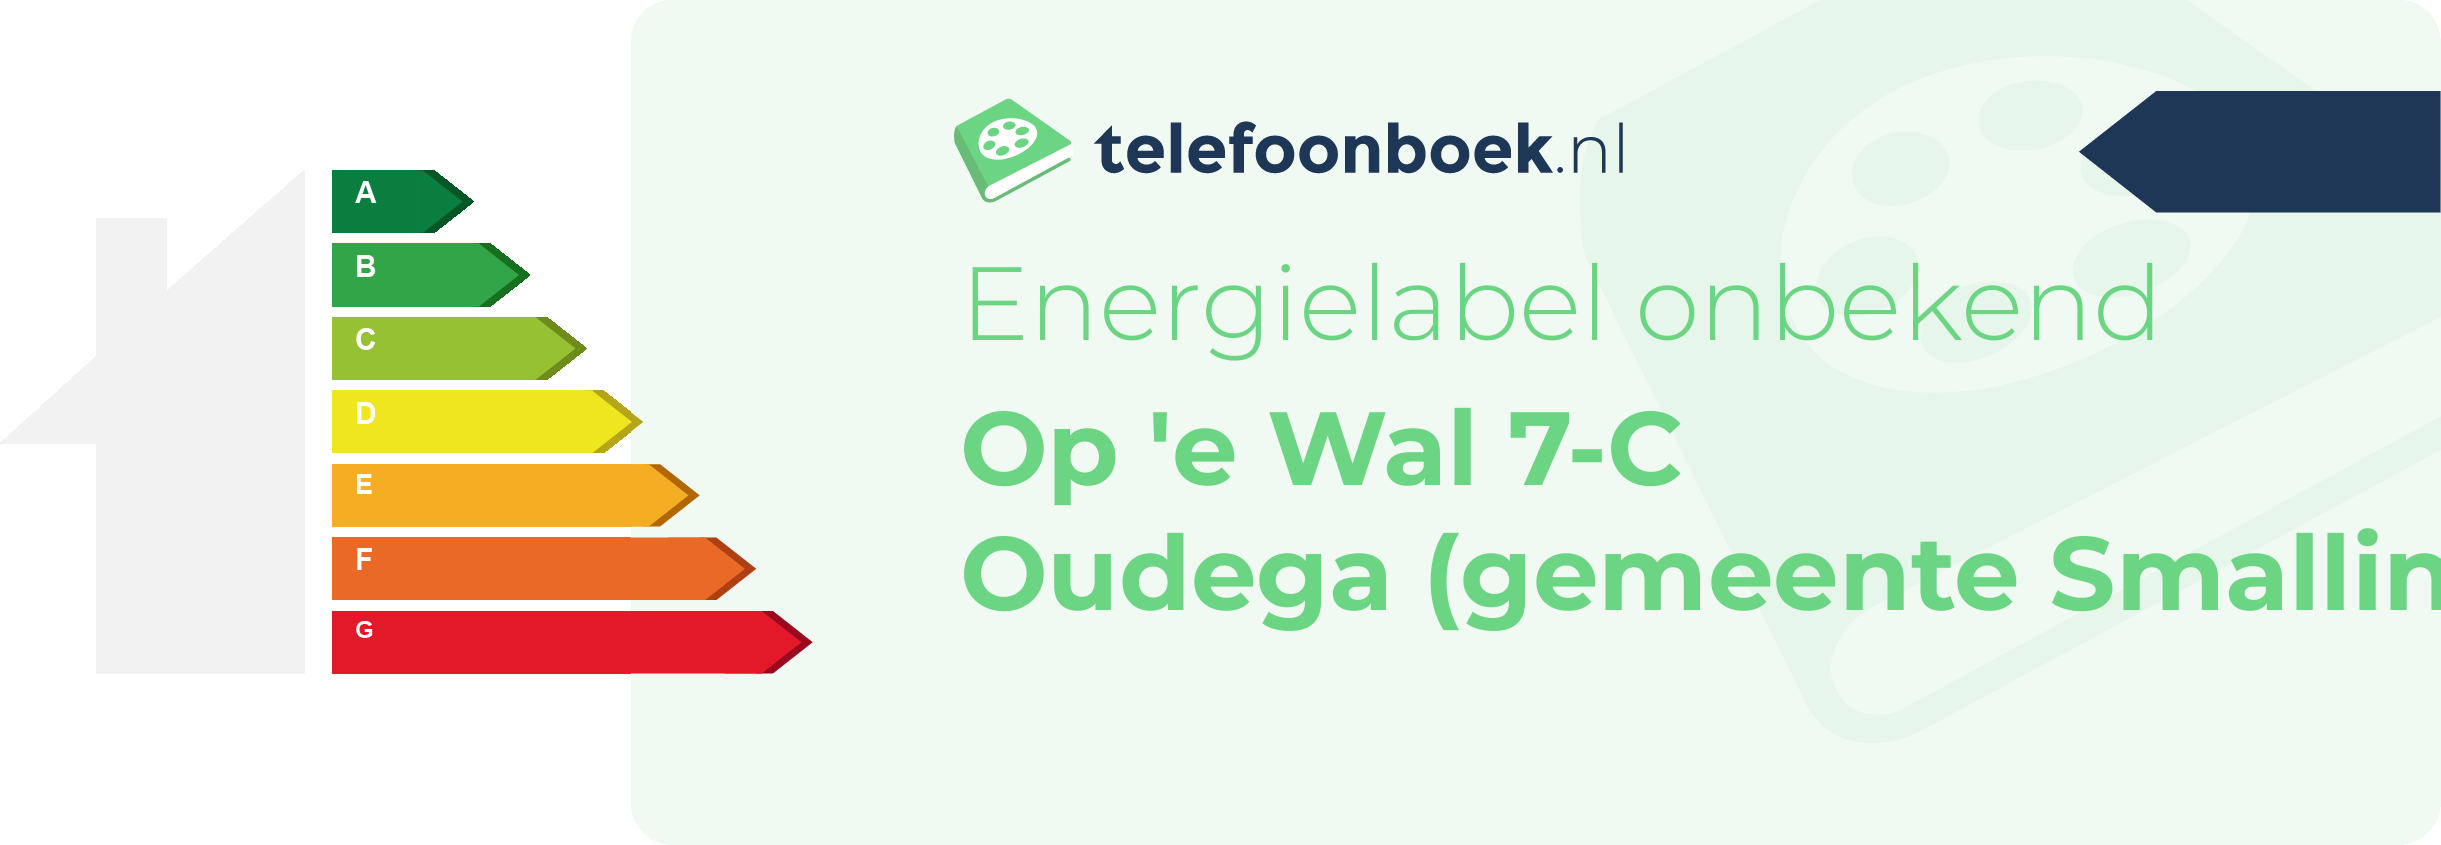 Energielabel Op 'e Wal 7-C Oudega (gemeente Smallingerland Friesland)